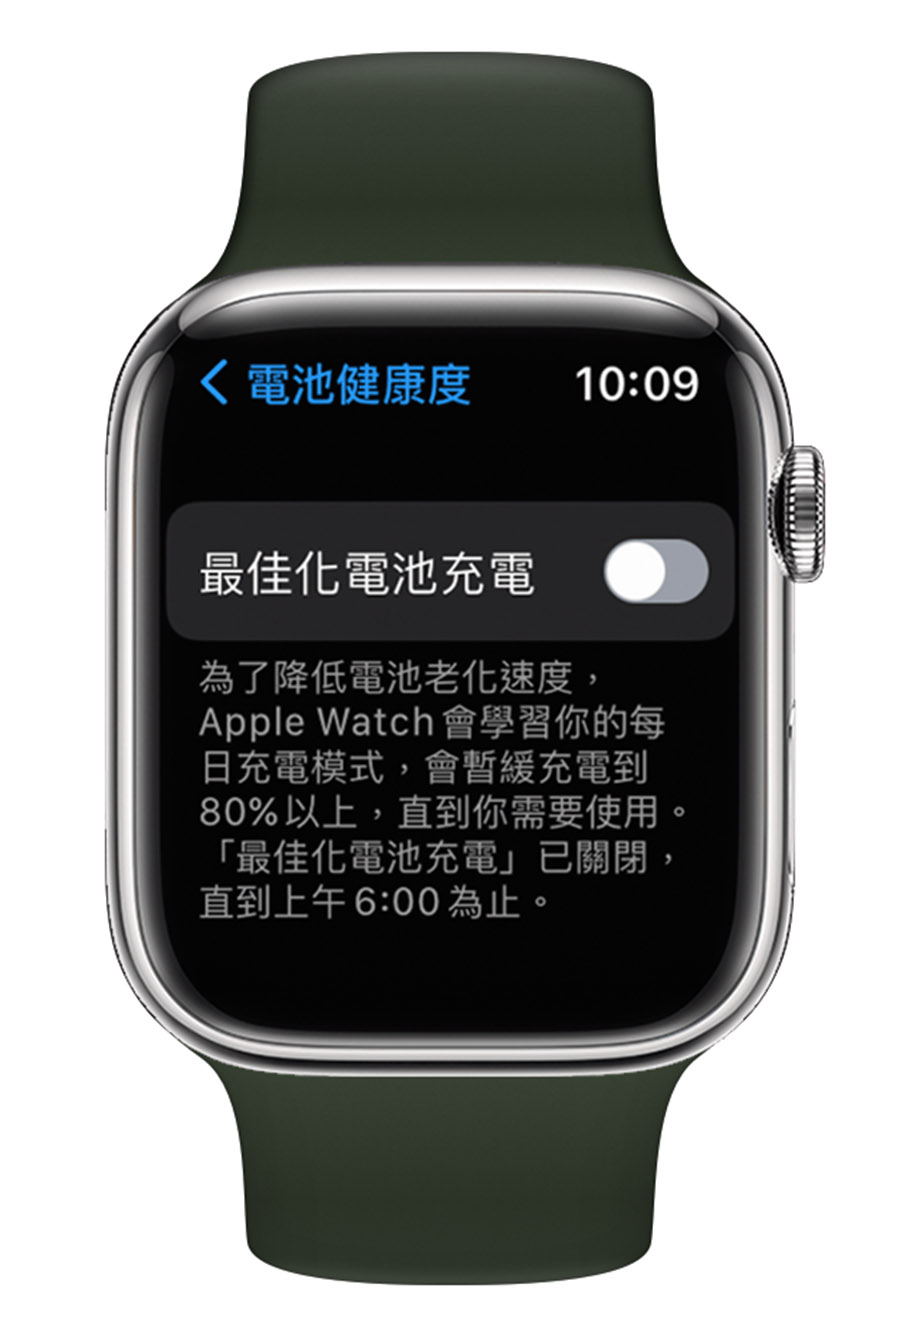 Apple Watch 最佳化電池充電